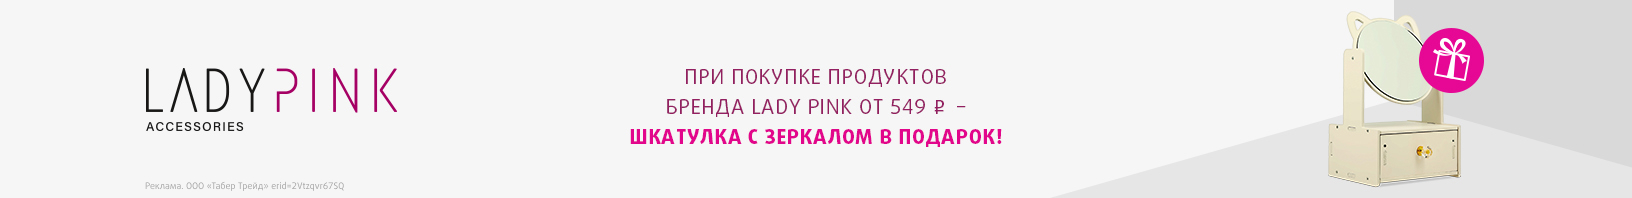 LADY PINK: шкатулка с зеркалом в подарок